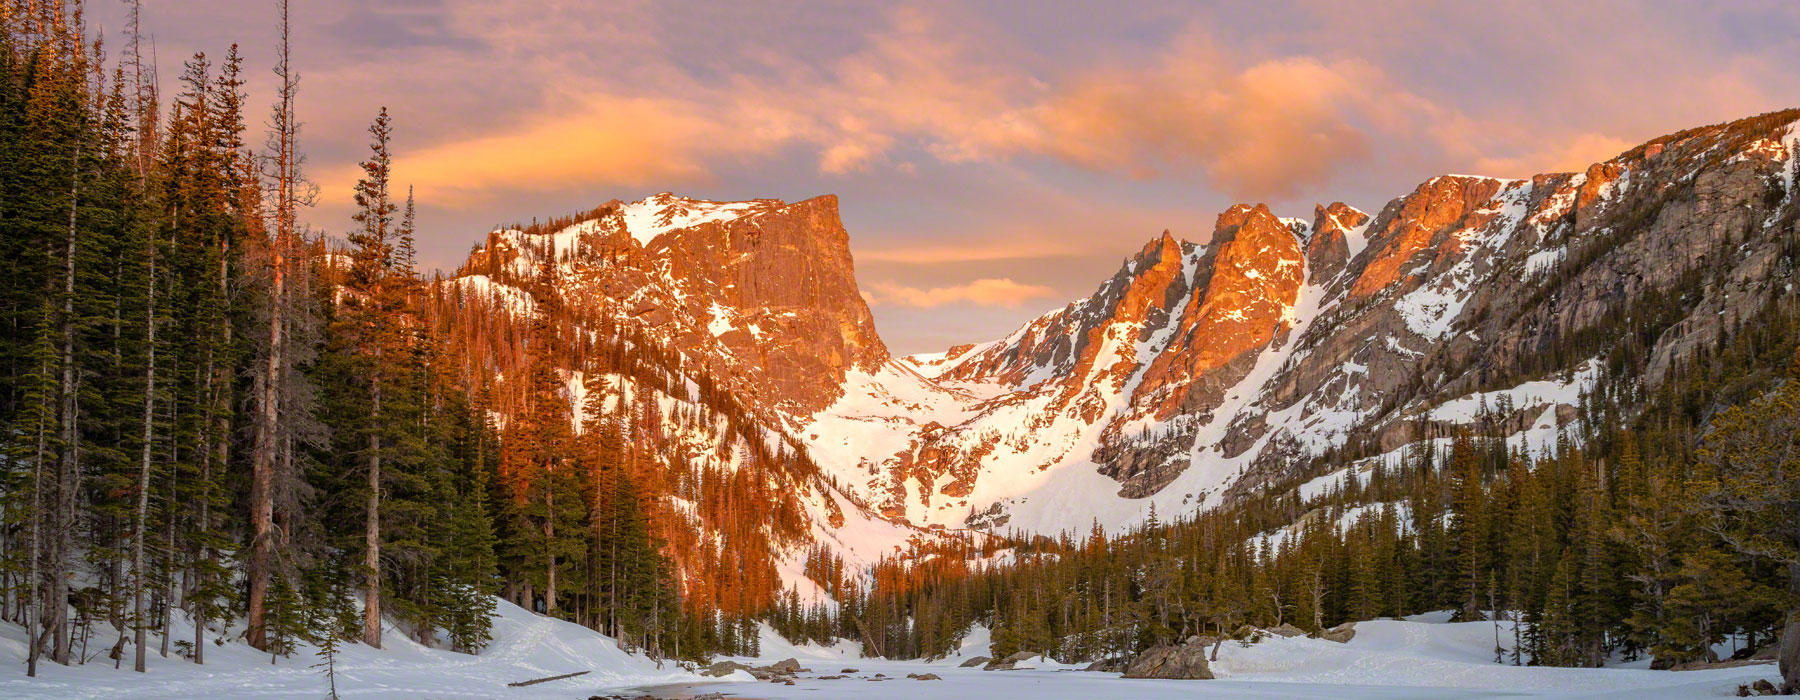 Rocky Mountain National Park 100 Anniversary & Photos History